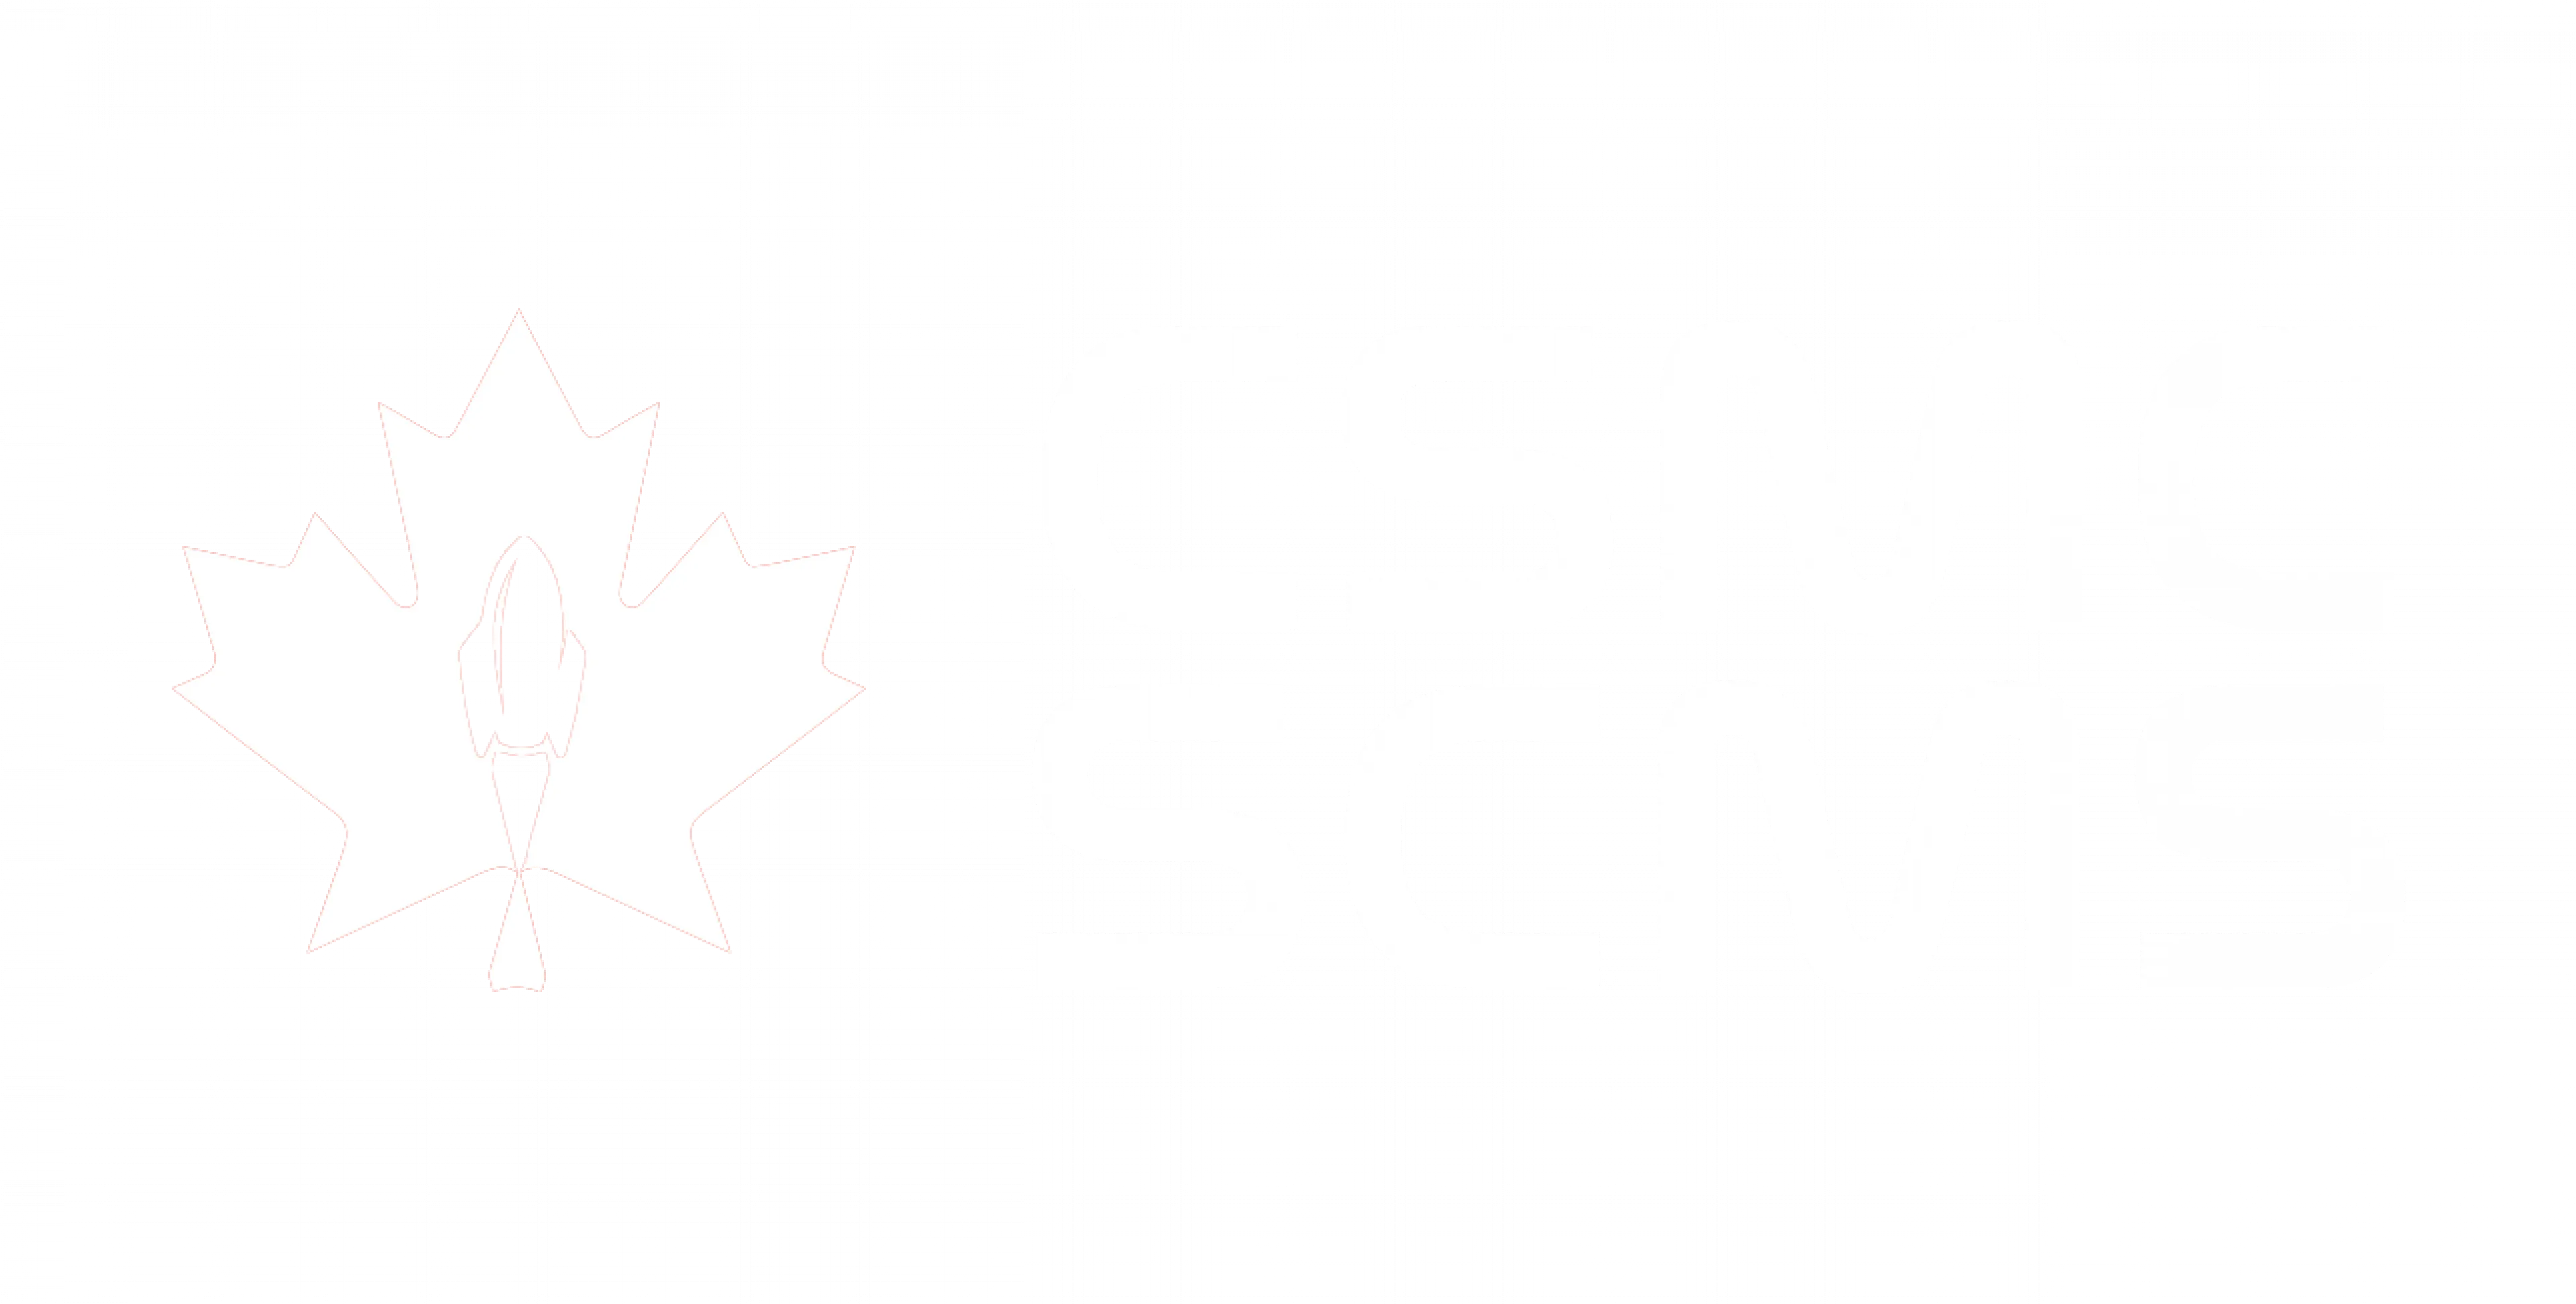 CSMC